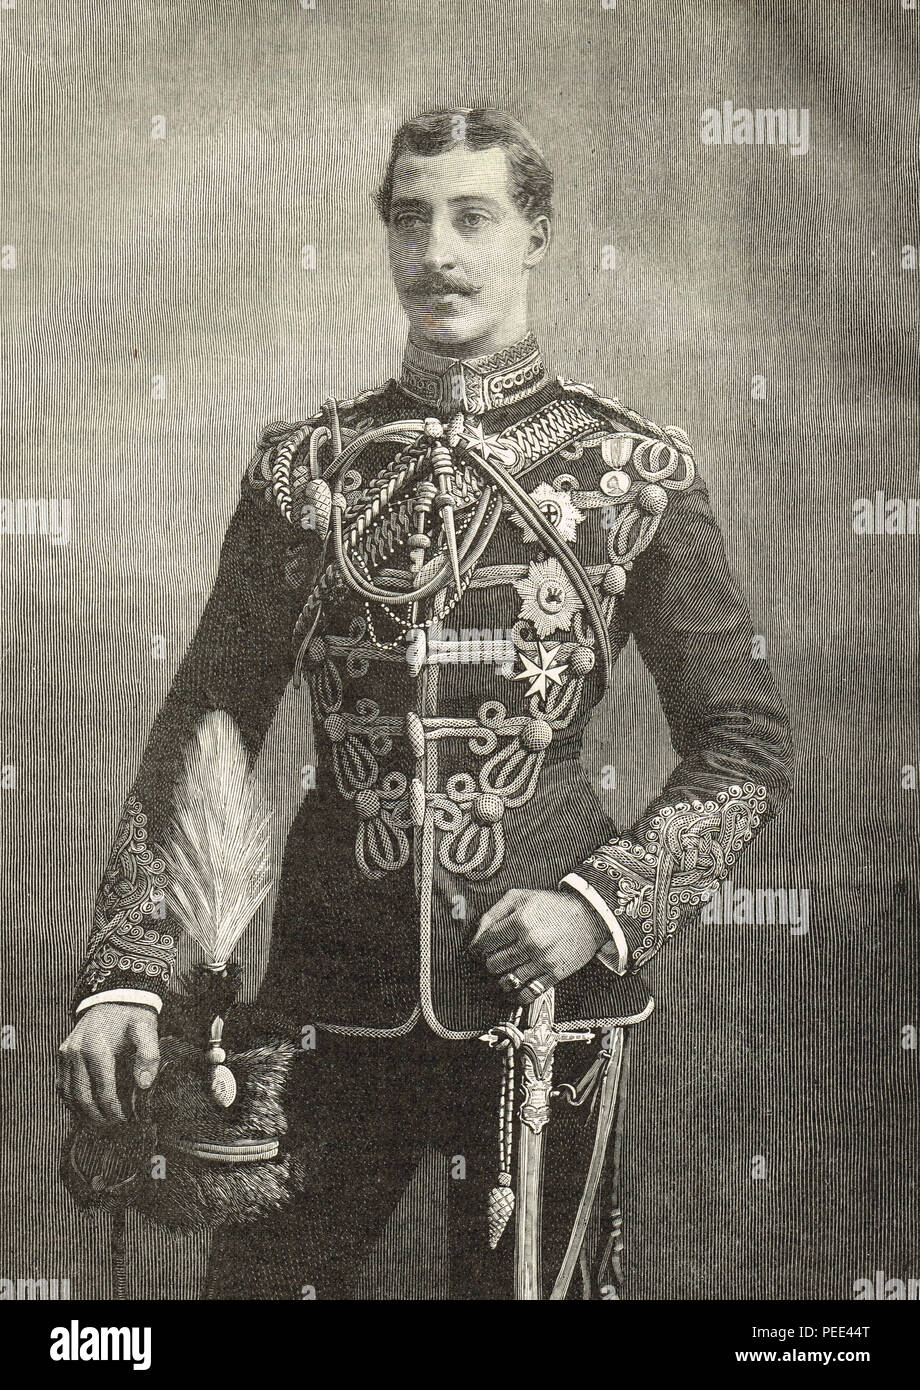 Il principe Albert Victor, Duca di Clarence e Avondale, primogenito del Principe di Galles in seguito re Edoardo VII, seconda in linea al trono britannico, morì prima di suo padre Foto Stock